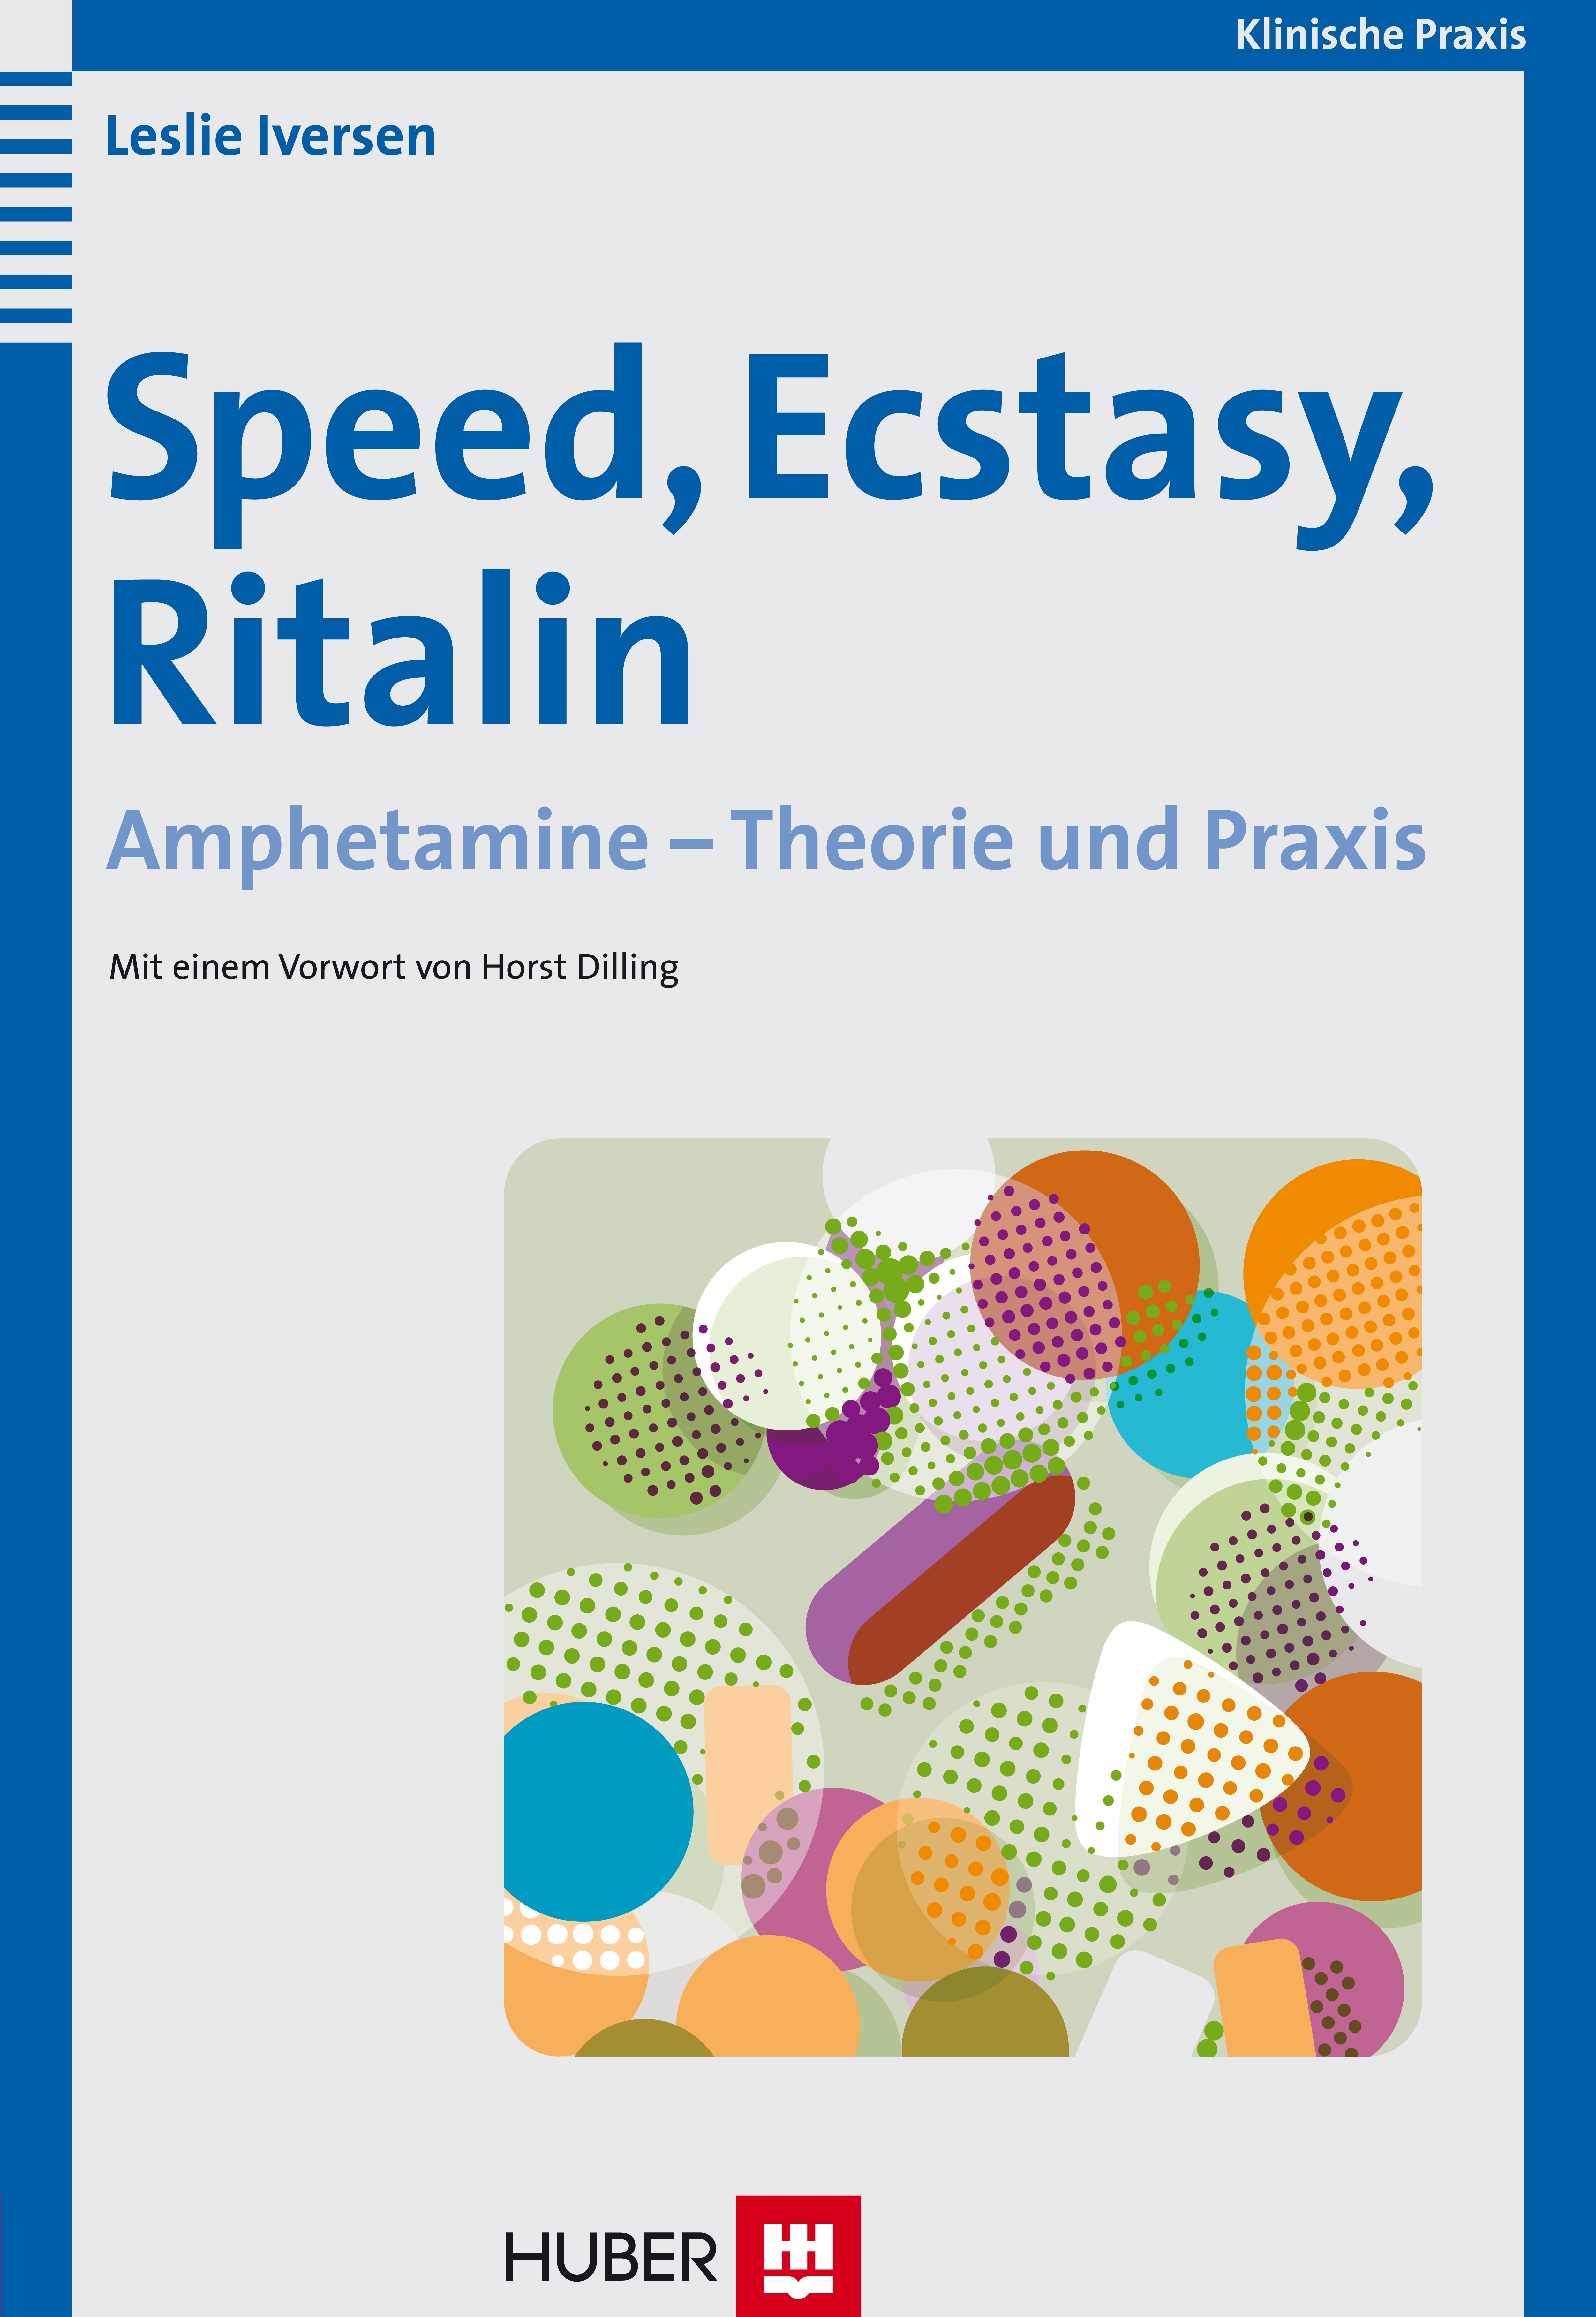 NEU Speed, Ecstasy, Ritalin Leslie Iversen 845197 - Picture 1 of 1